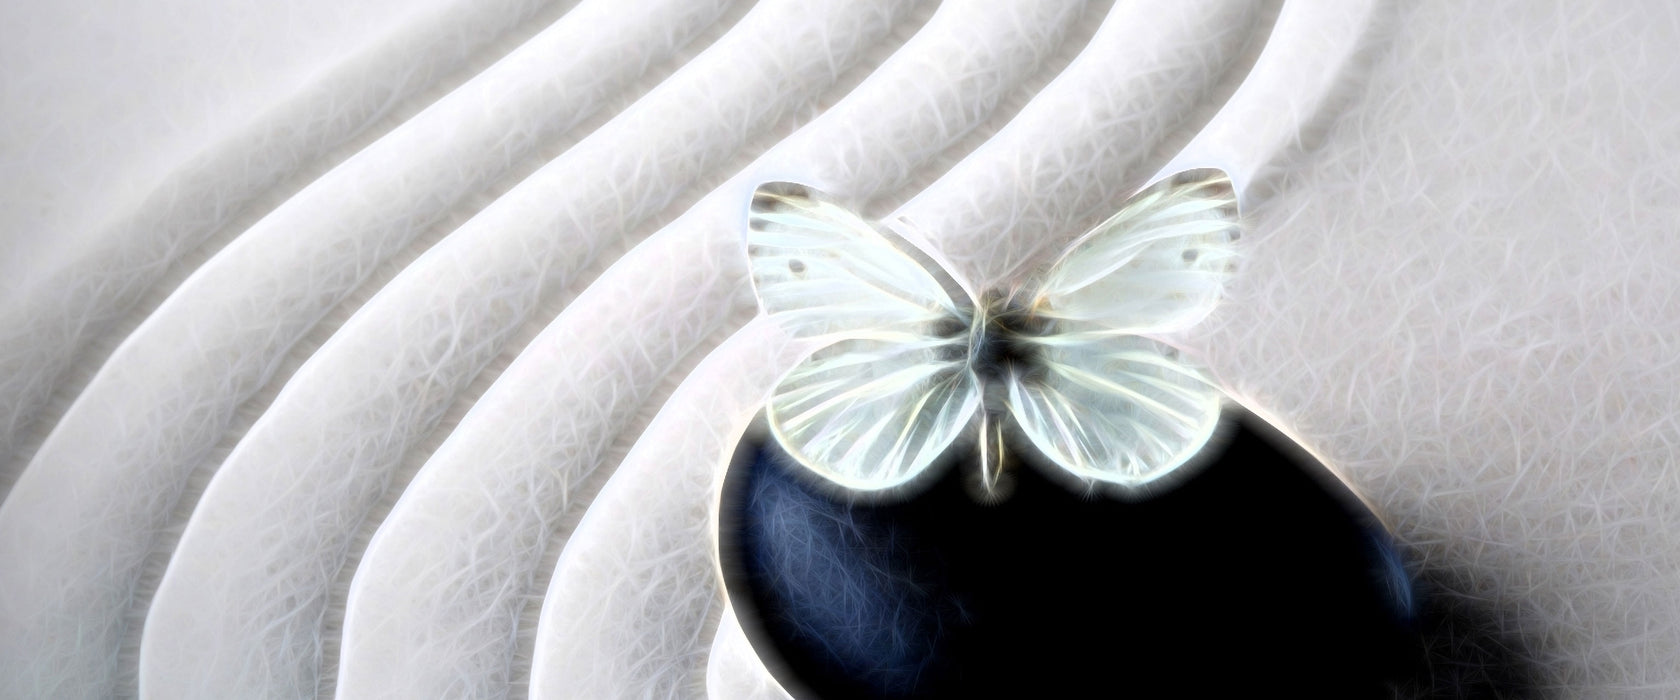 Schmetterling auf Zen Stein, Glasbild Panorama